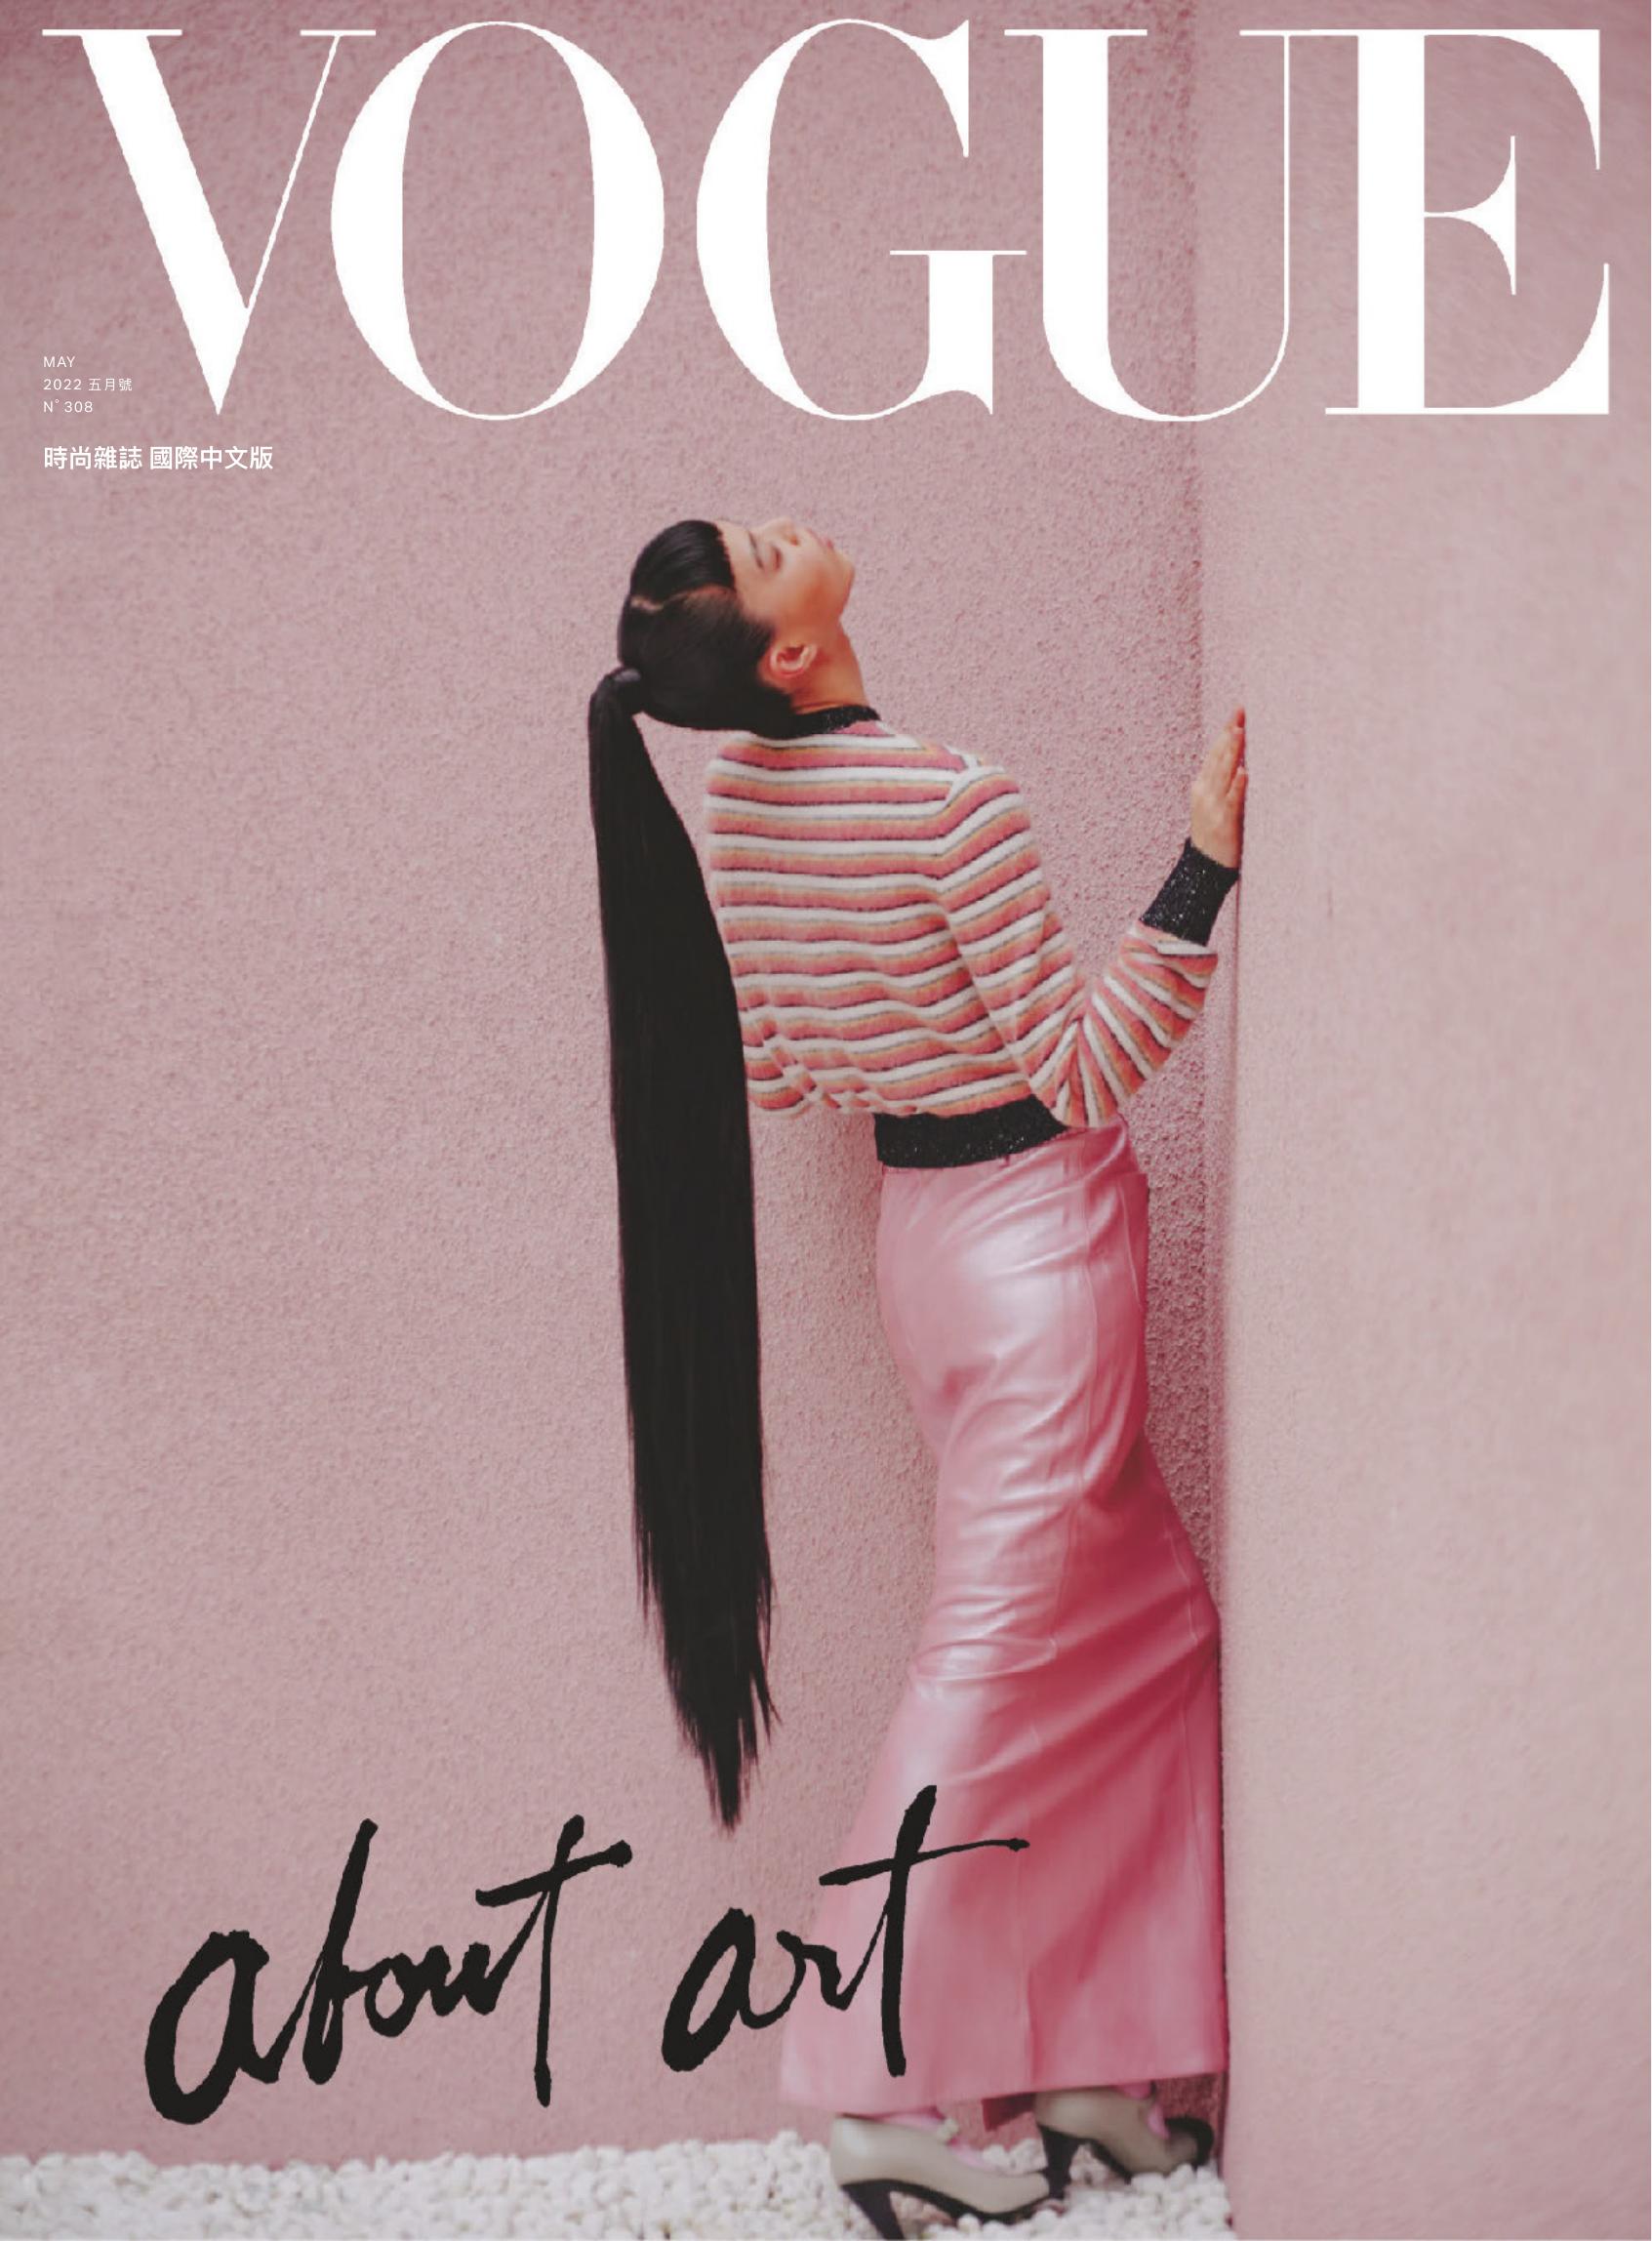 中文繁体《Vogue国际中文版》时尚杂志订阅电子版PDF【2022年全年订阅】